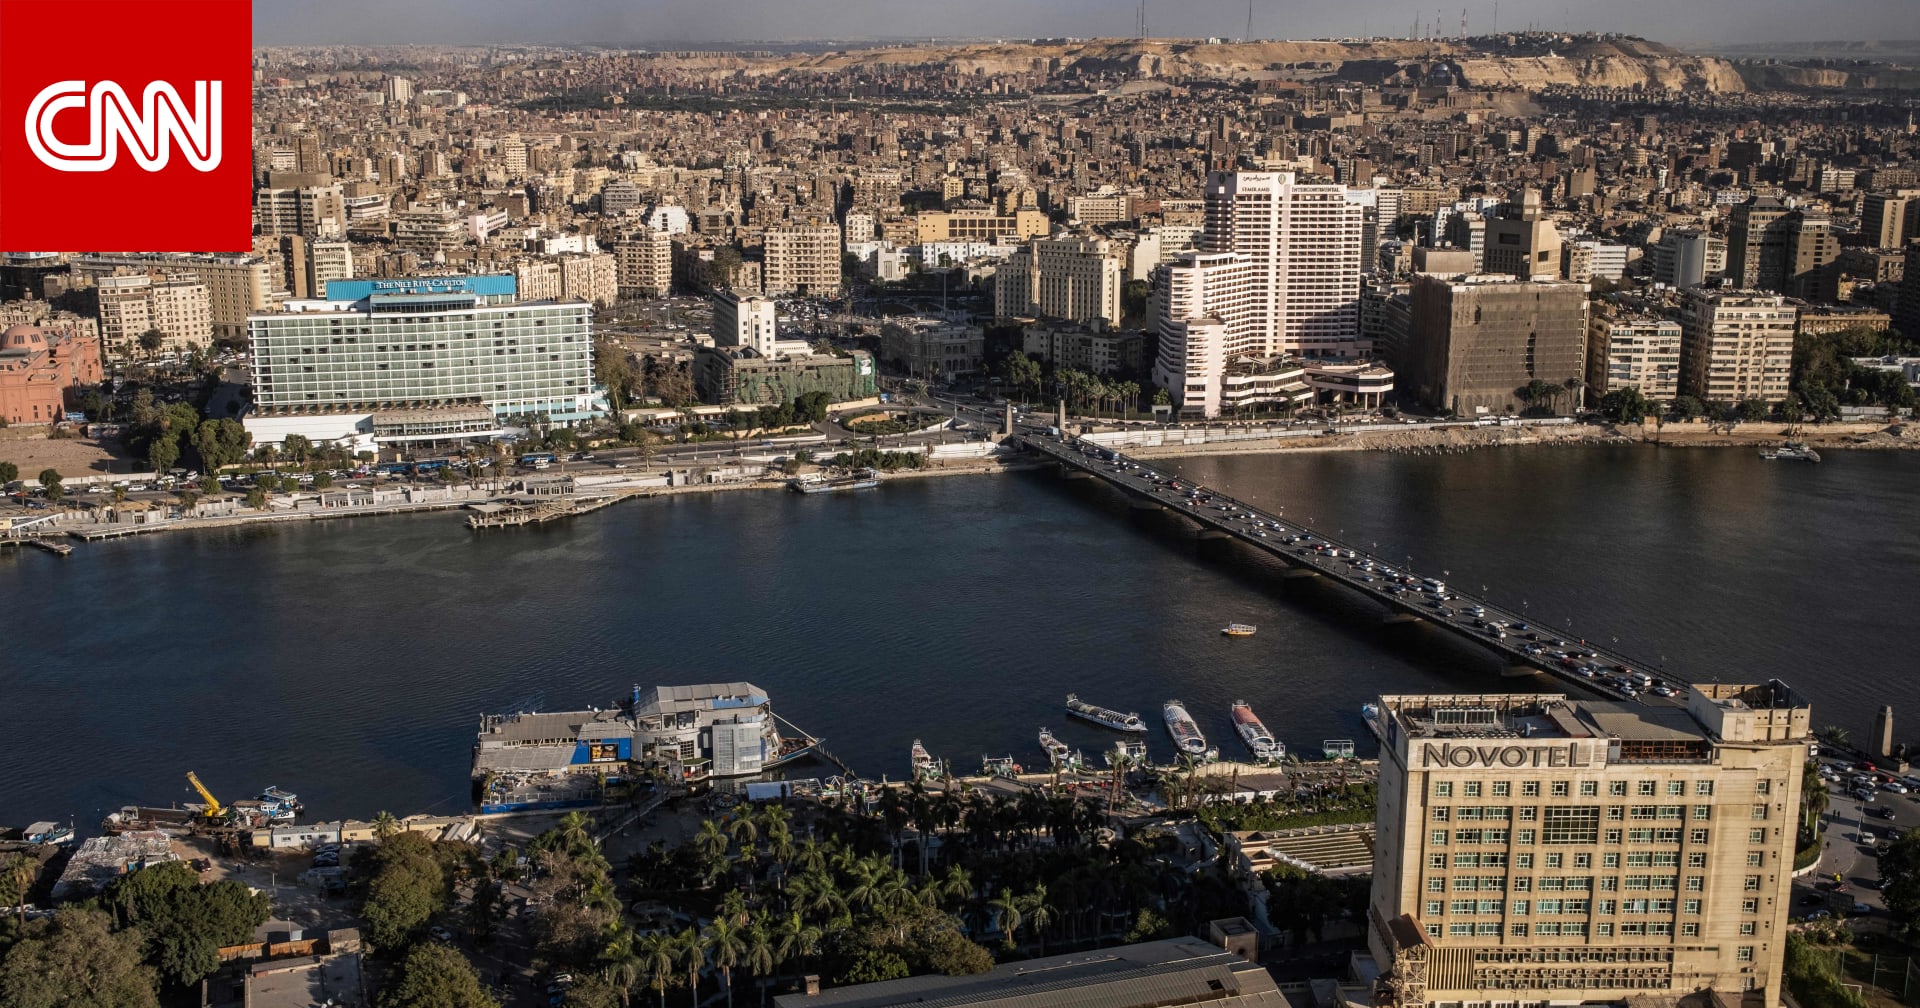 مصر تعلن ترشيد استهلاك الكهرباء في مباني الحكومة